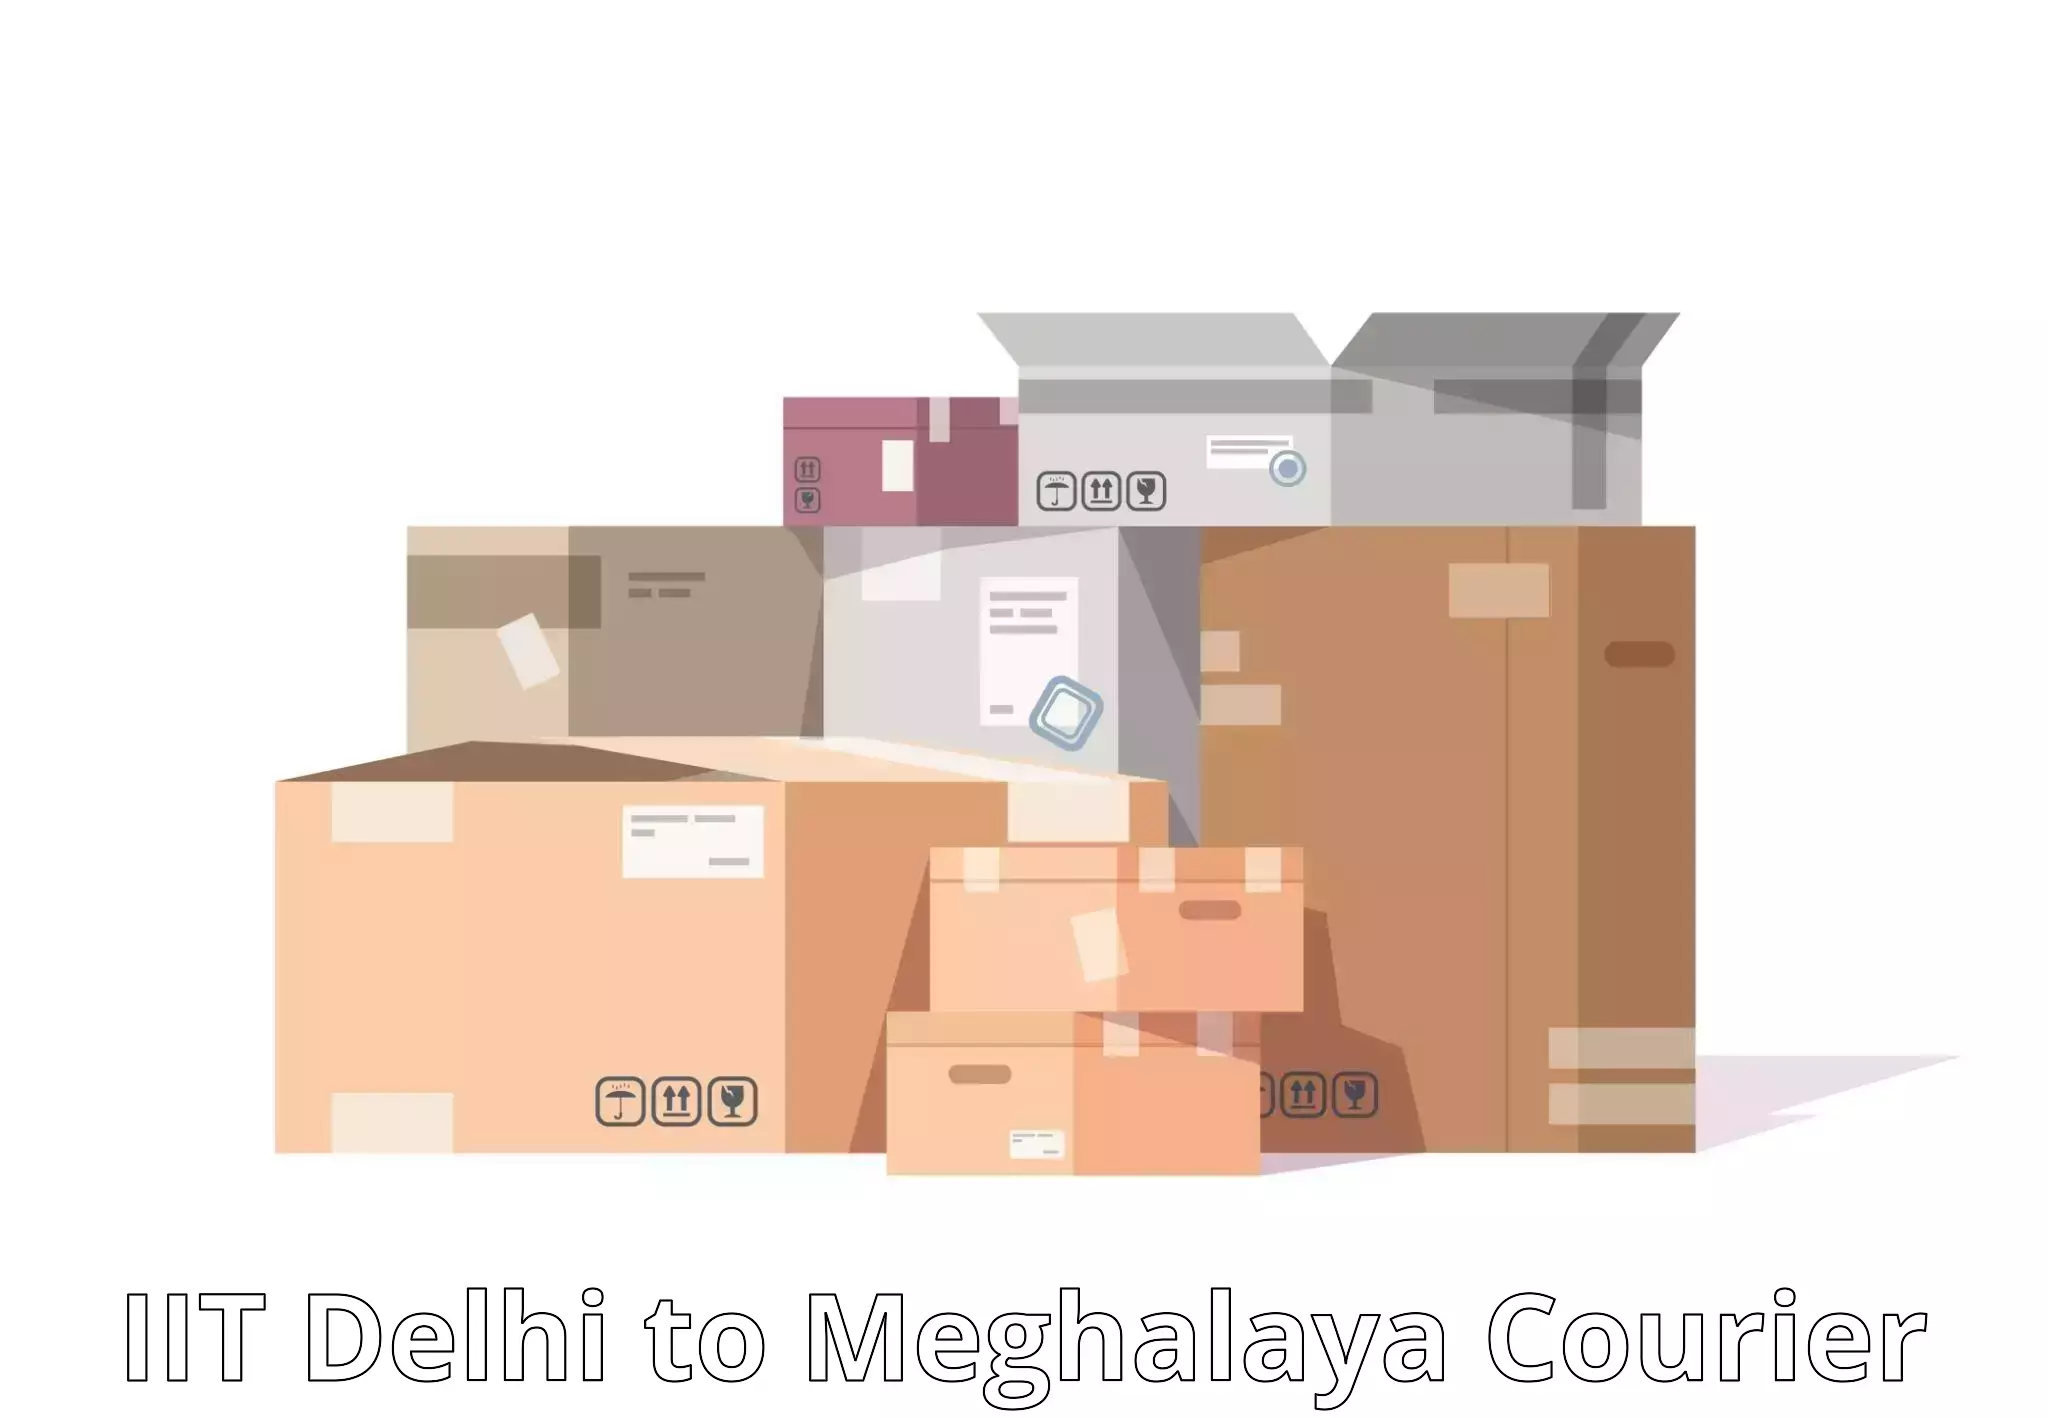 Local courier options IIT Delhi to Jaintia Hills